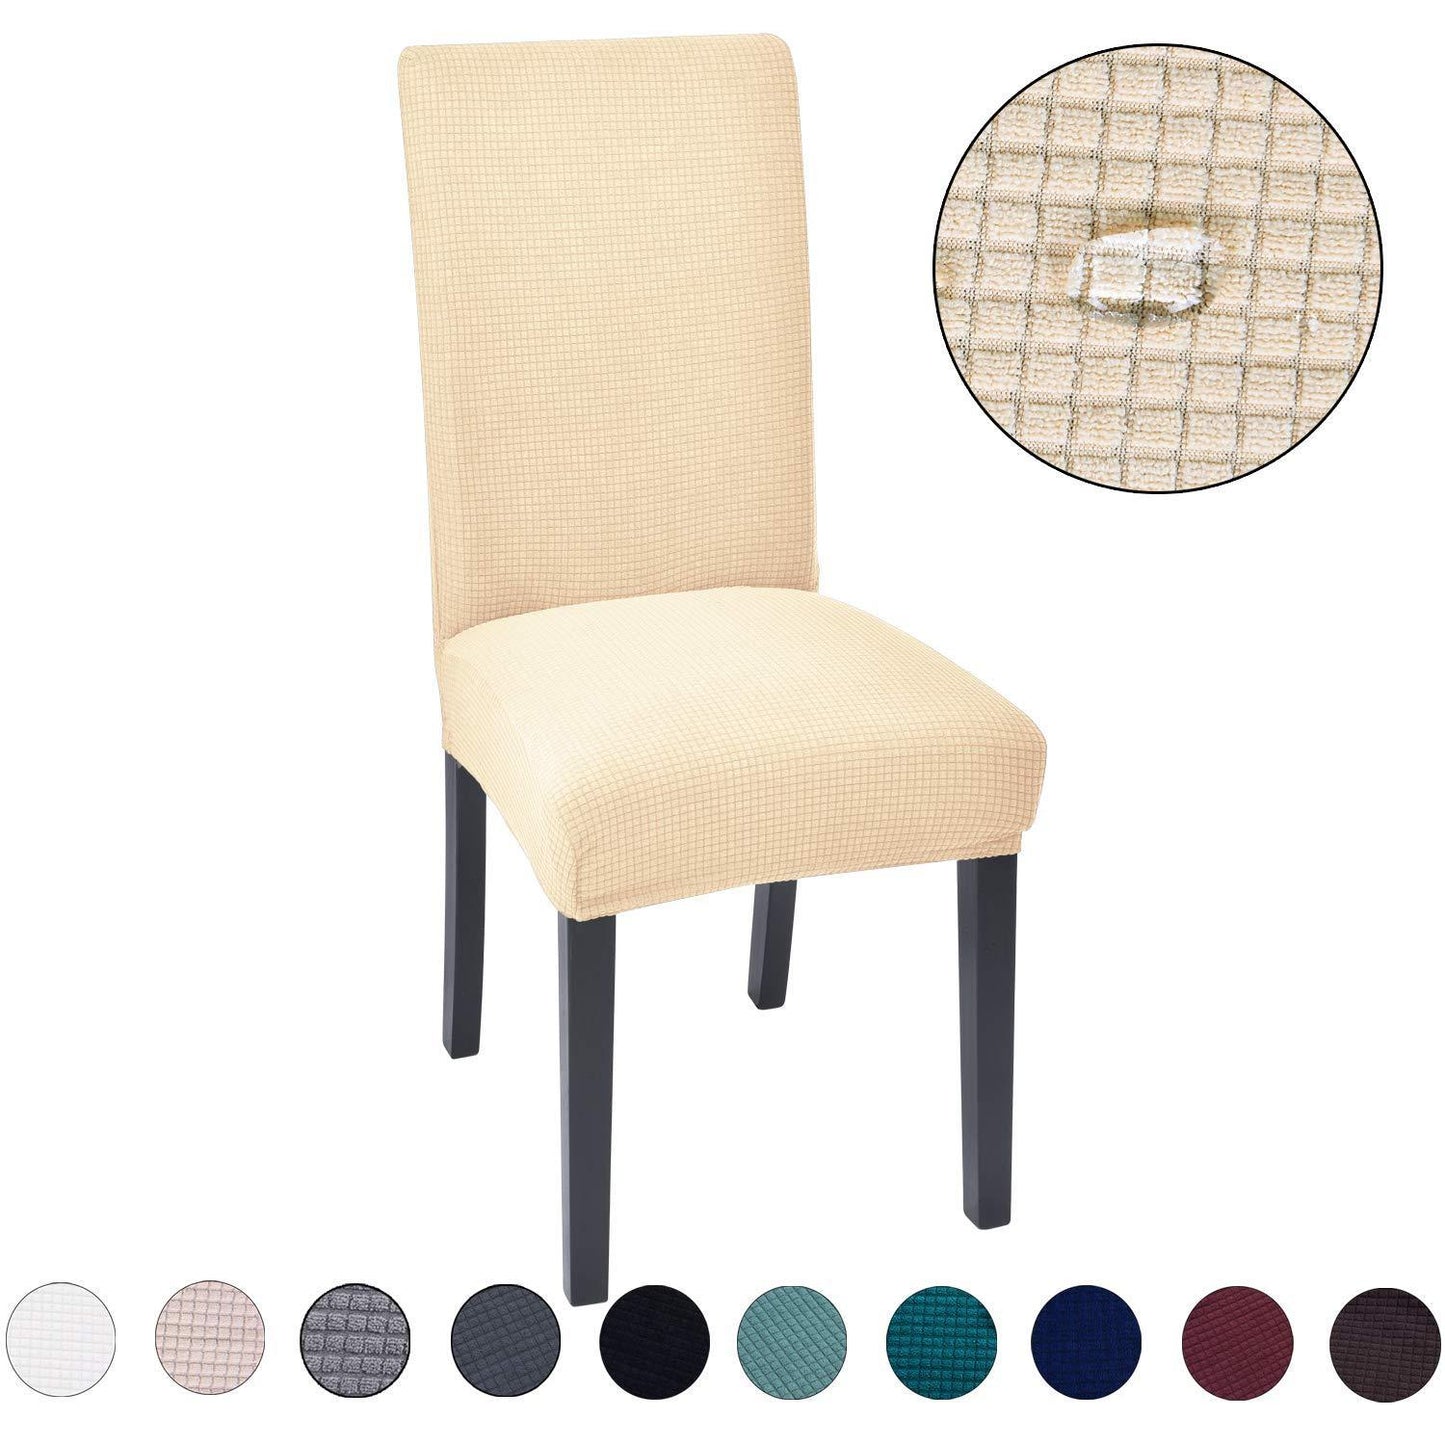 Housses de chaise décoratives - Bellaget™ - Den danske butik